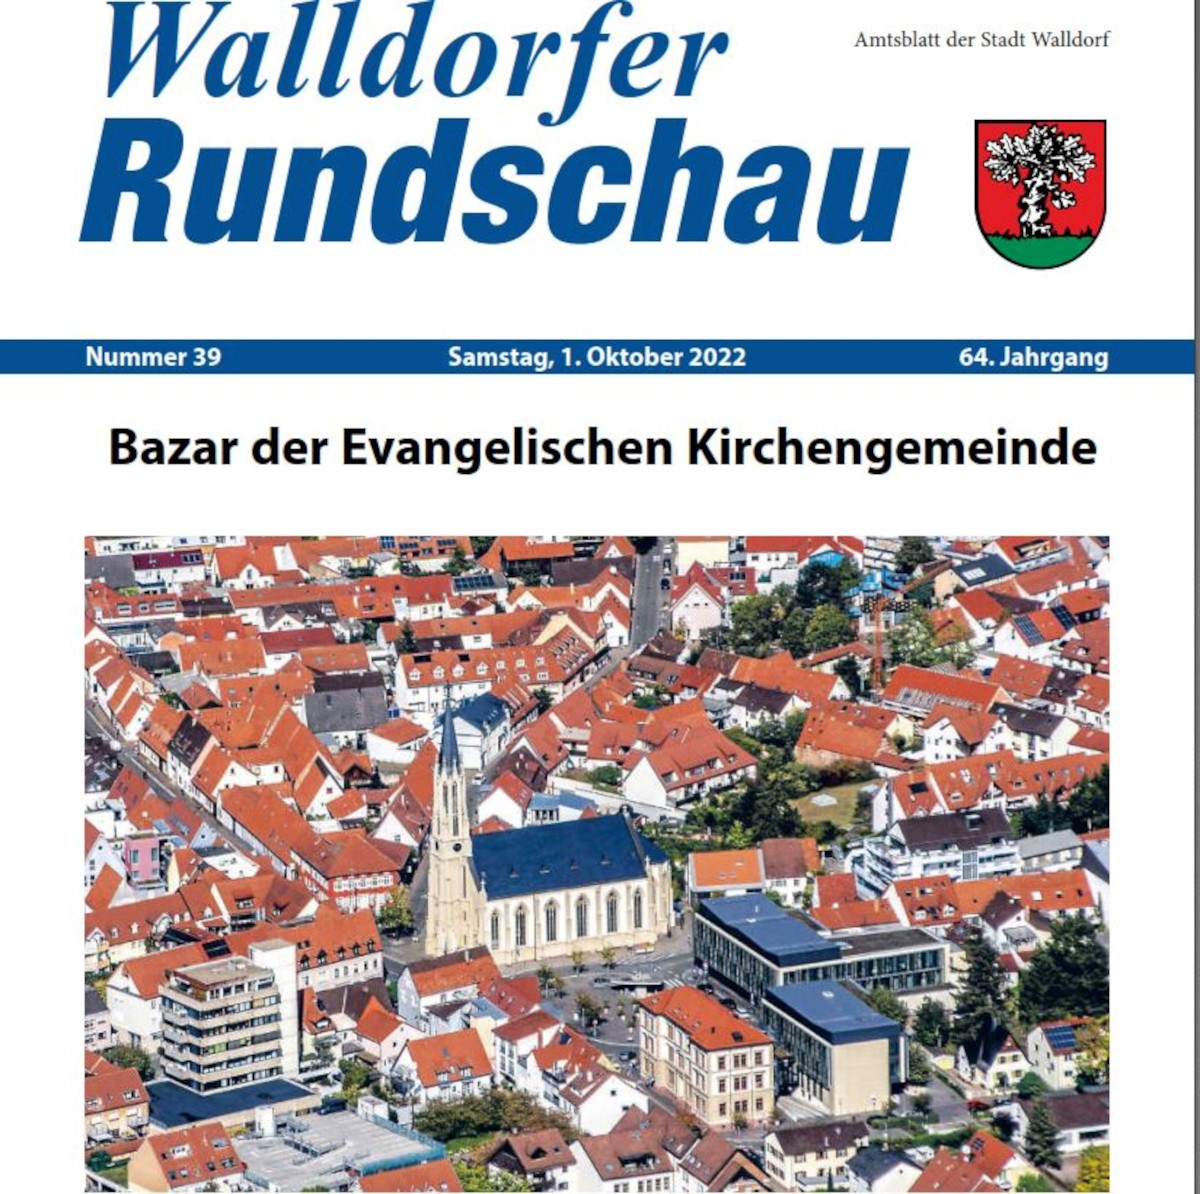 Die Walldorfer Rundschau 2022 Nr. 39 als E-paper | Bildschirmabgriff